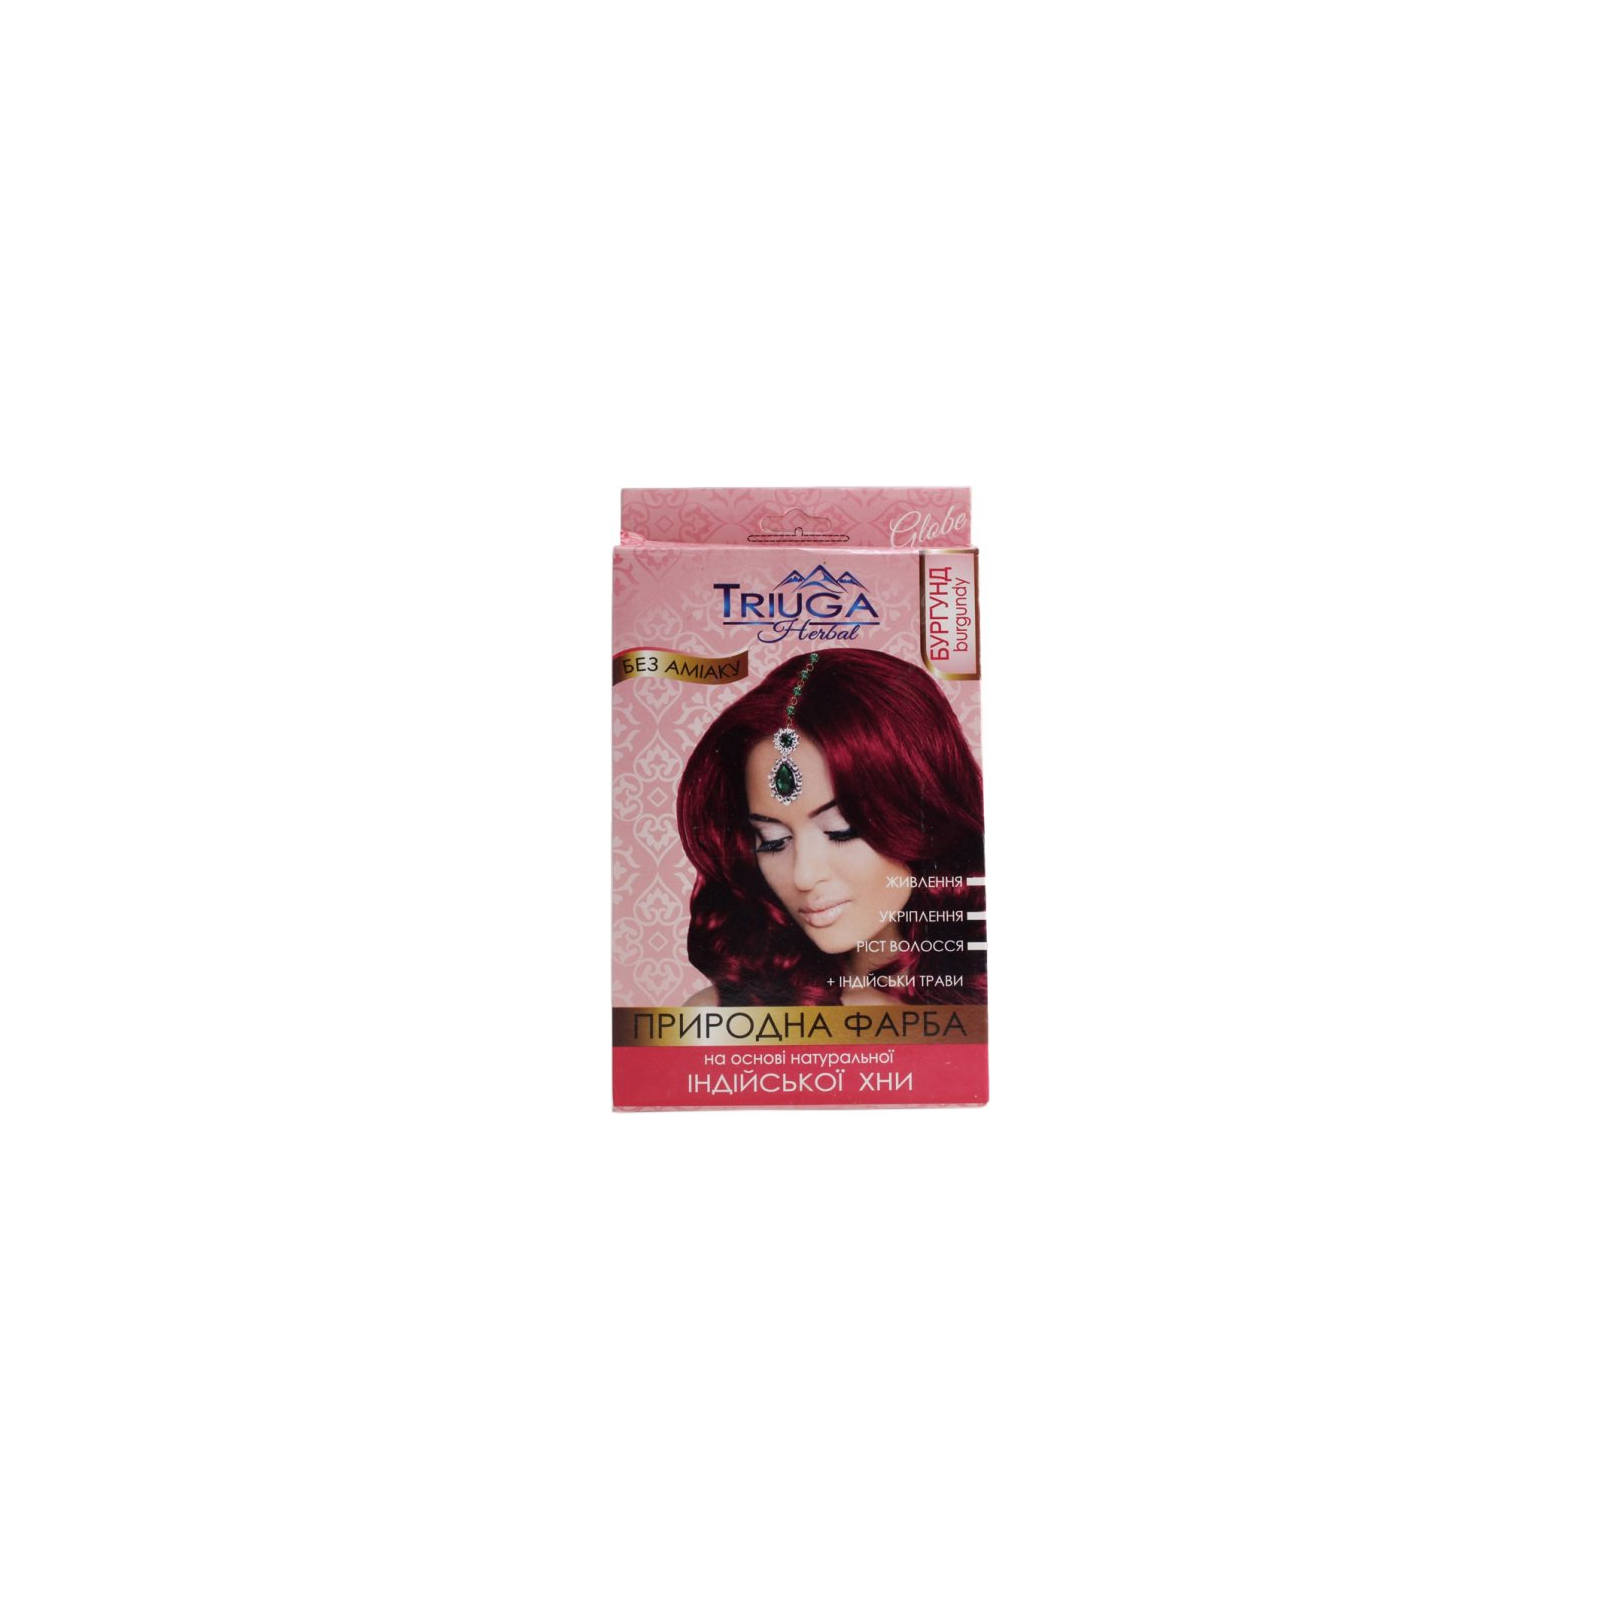 Фарба для волосся Triuga На основі натуральної індійської хни Бургунд 25 г (8908003544144)